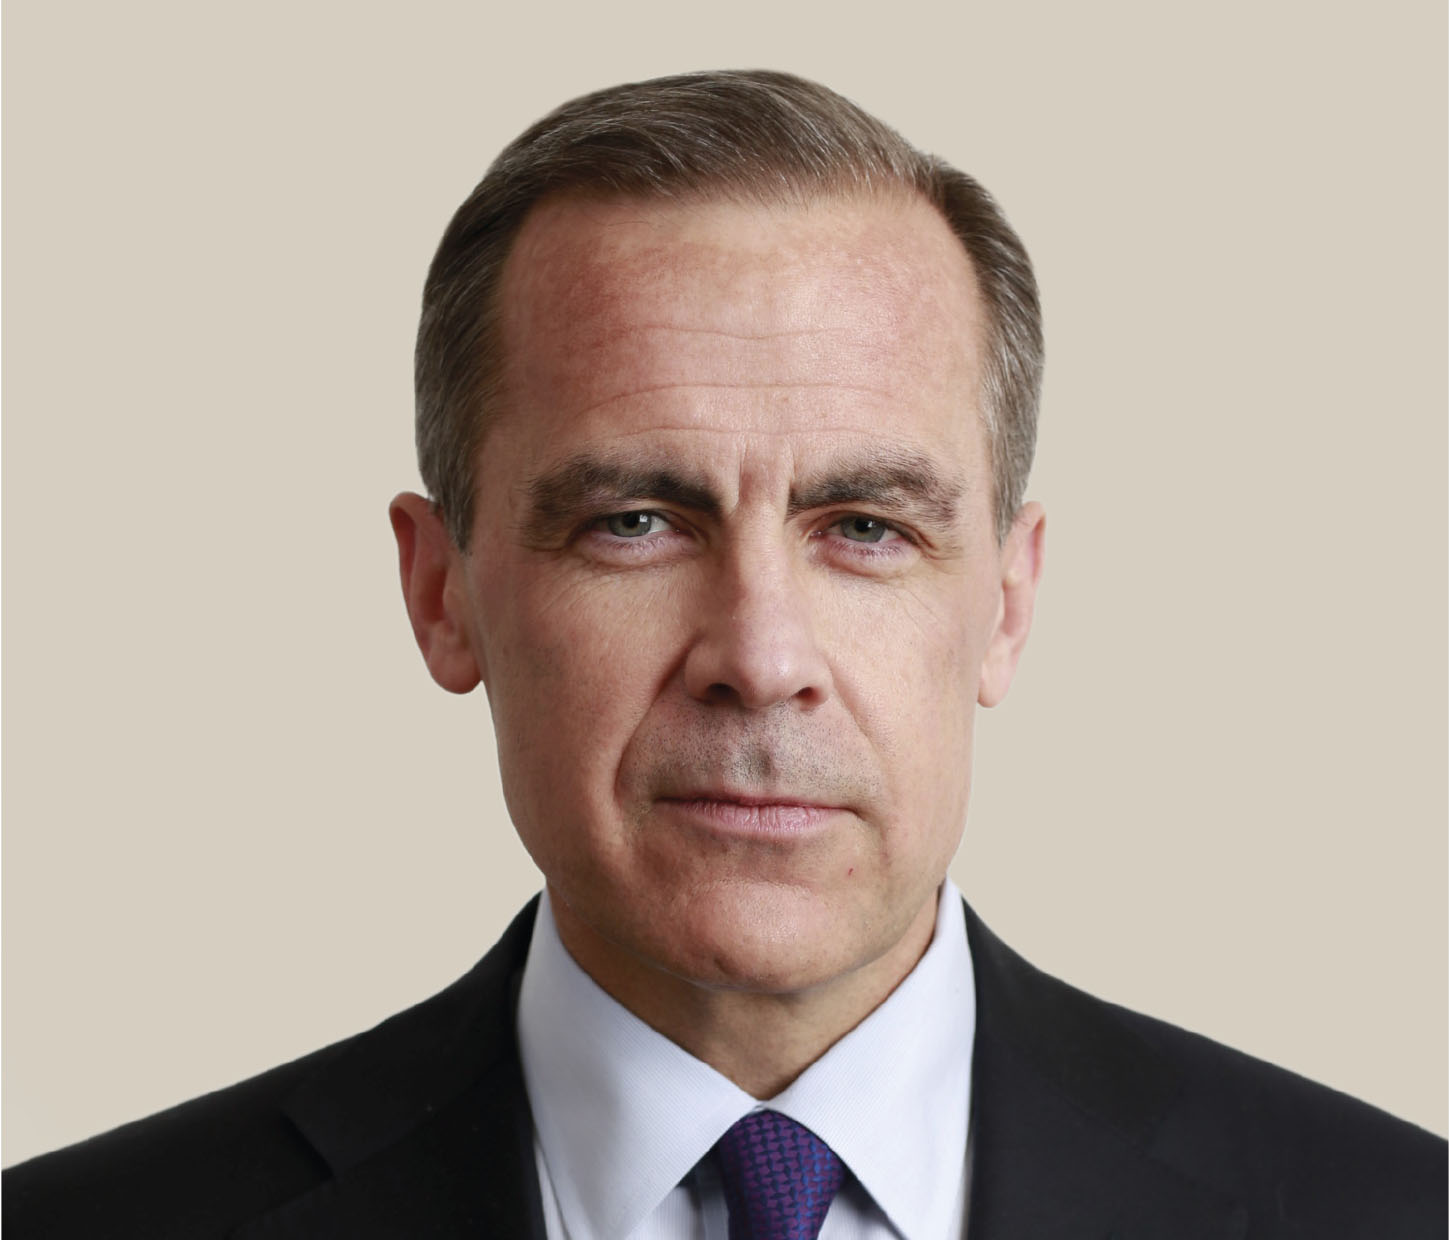 Bank of England GOVERNOR: Mark Carney